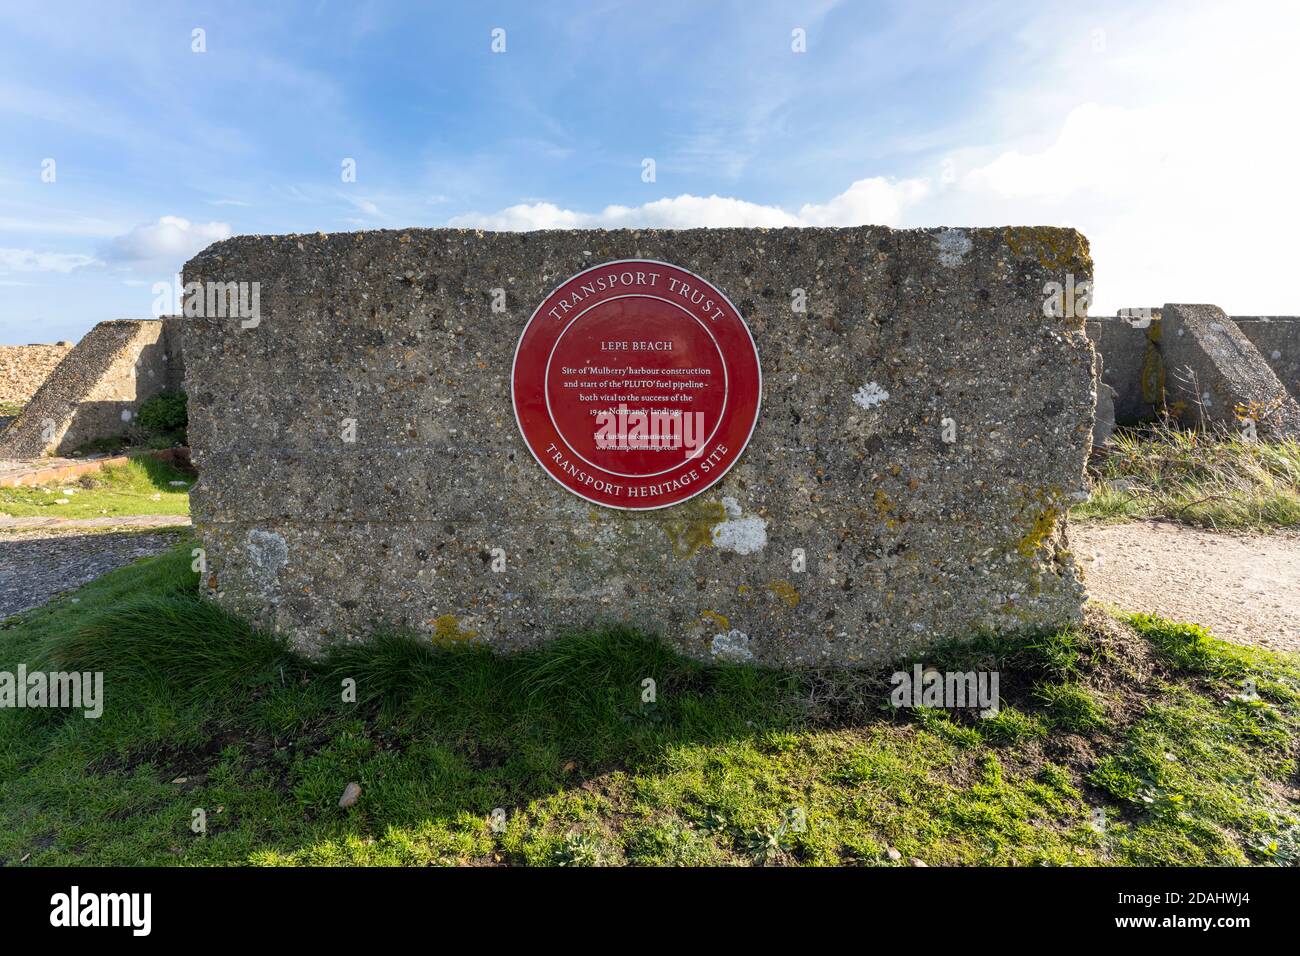 Plaque du patrimoine rouge à Lepe Beach, New Forest, Hampshire, Angleterre, Royaume-Uni - site de construction du port de 'Mullberry' et début du gazoduc de 'Pluto'. Banque D'Images